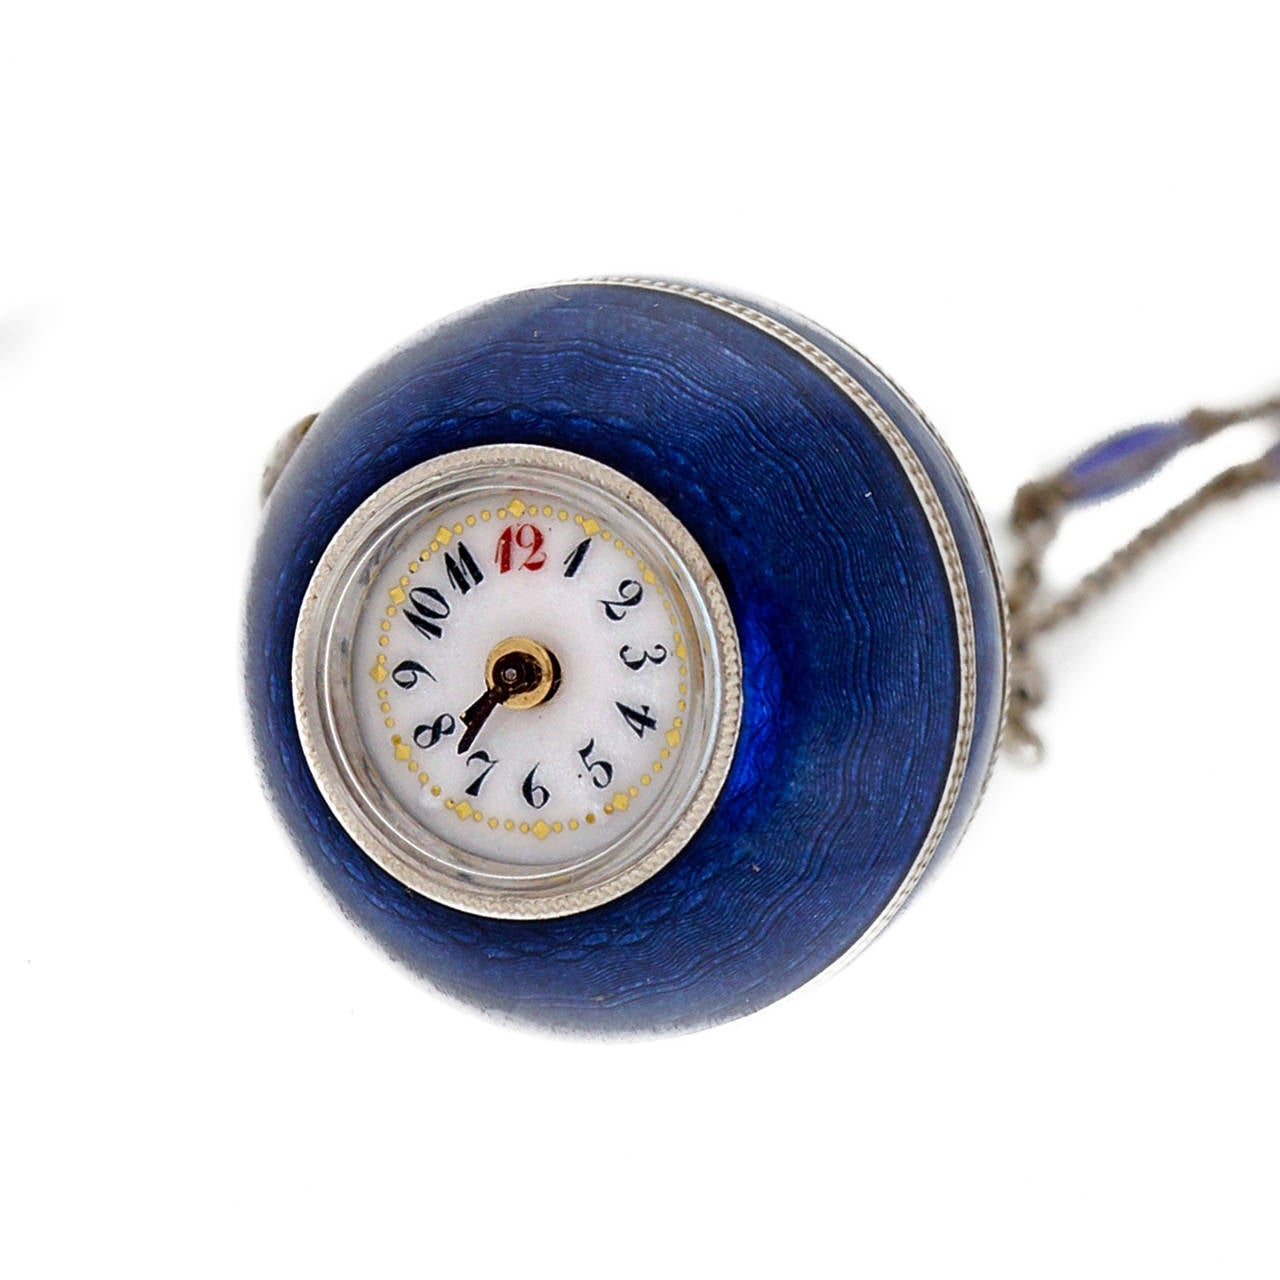 Blaue Emaillekugel-Uhrenkette. Original blaue Emaillekugel:: um 1890. Hebel seitlich angesetzt. Winde durch Drehen der unteren Hälfte der Uhr. Zifferblatt aus Porzellanemail. 

Silber
29::0 Gramm
Emaille
29::0 Gramm
24-Zoll-Silberkette mit blauen